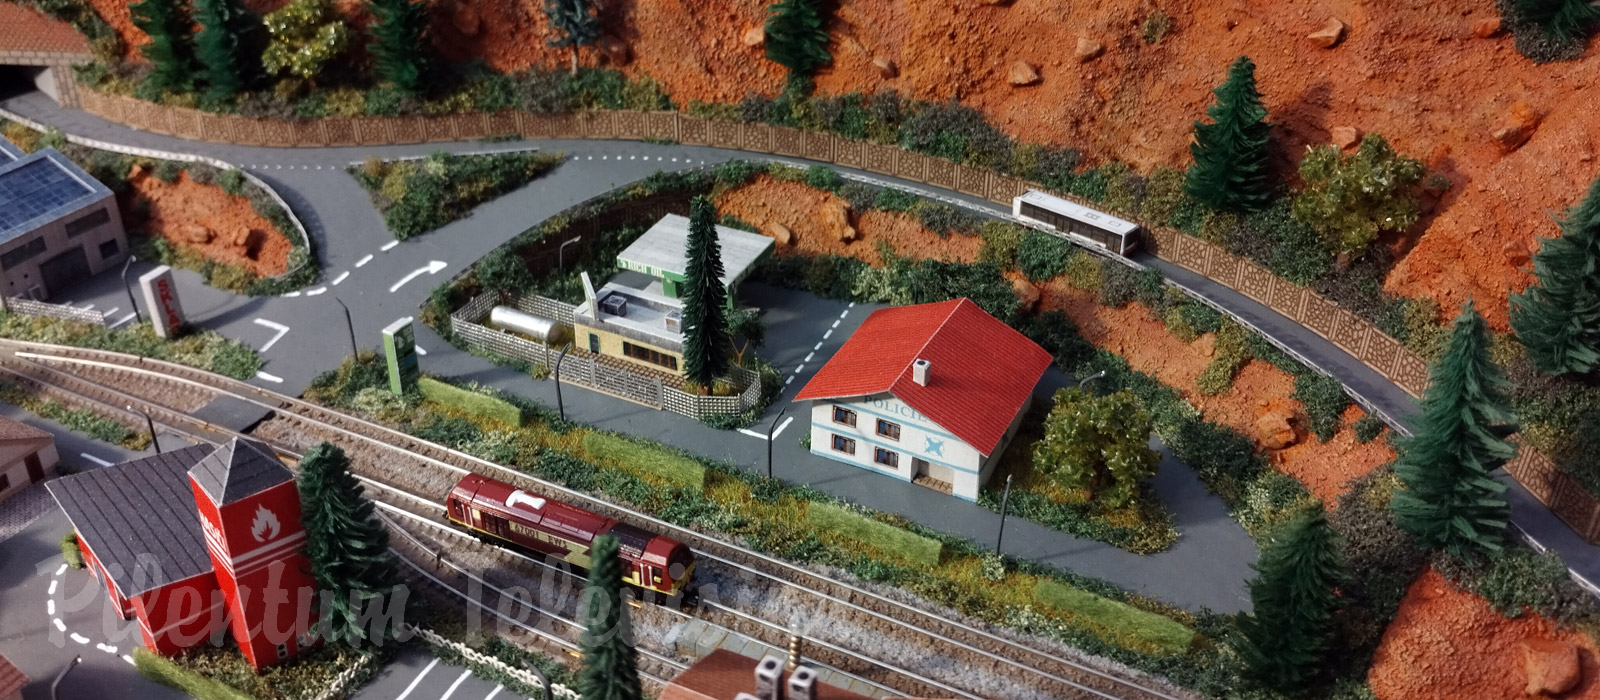 Uno dei più piccoli plastici ferroviari: Micro modelli e treni elettrici in scala 1/480 (T-Gauge)